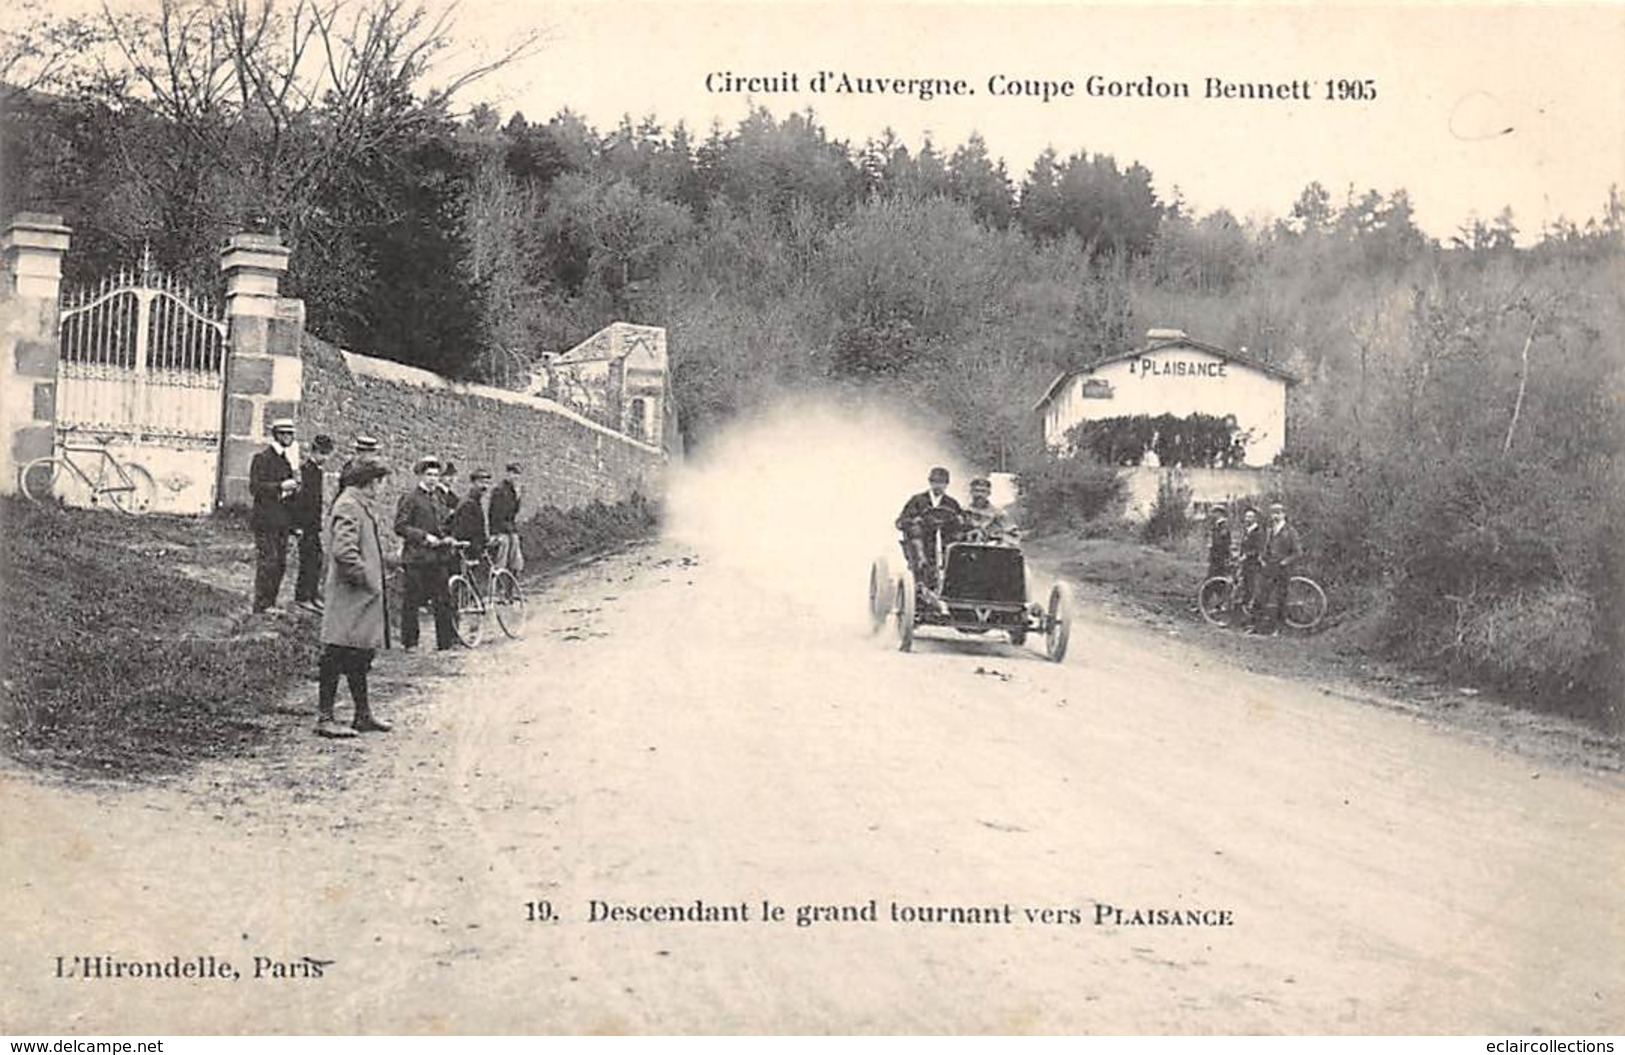 Thème:  Sport Automobile .Circuit d'Auvergne.Coupe Gordon Bennett 1905 . Ensemble de 7 cartes   (voir scan)